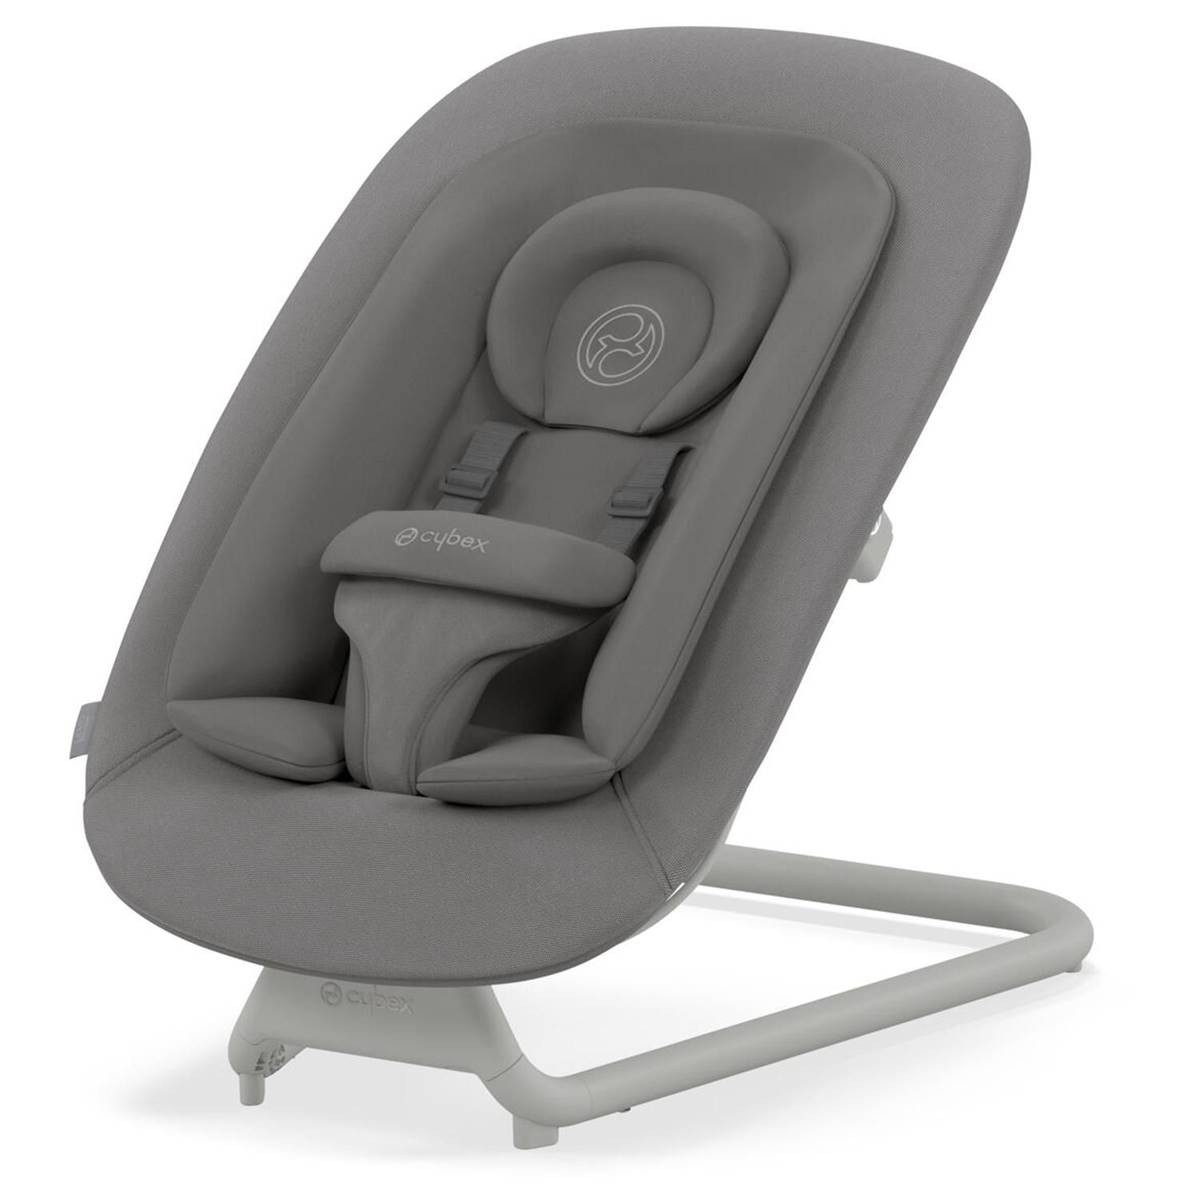 Chaise haute transat bébé